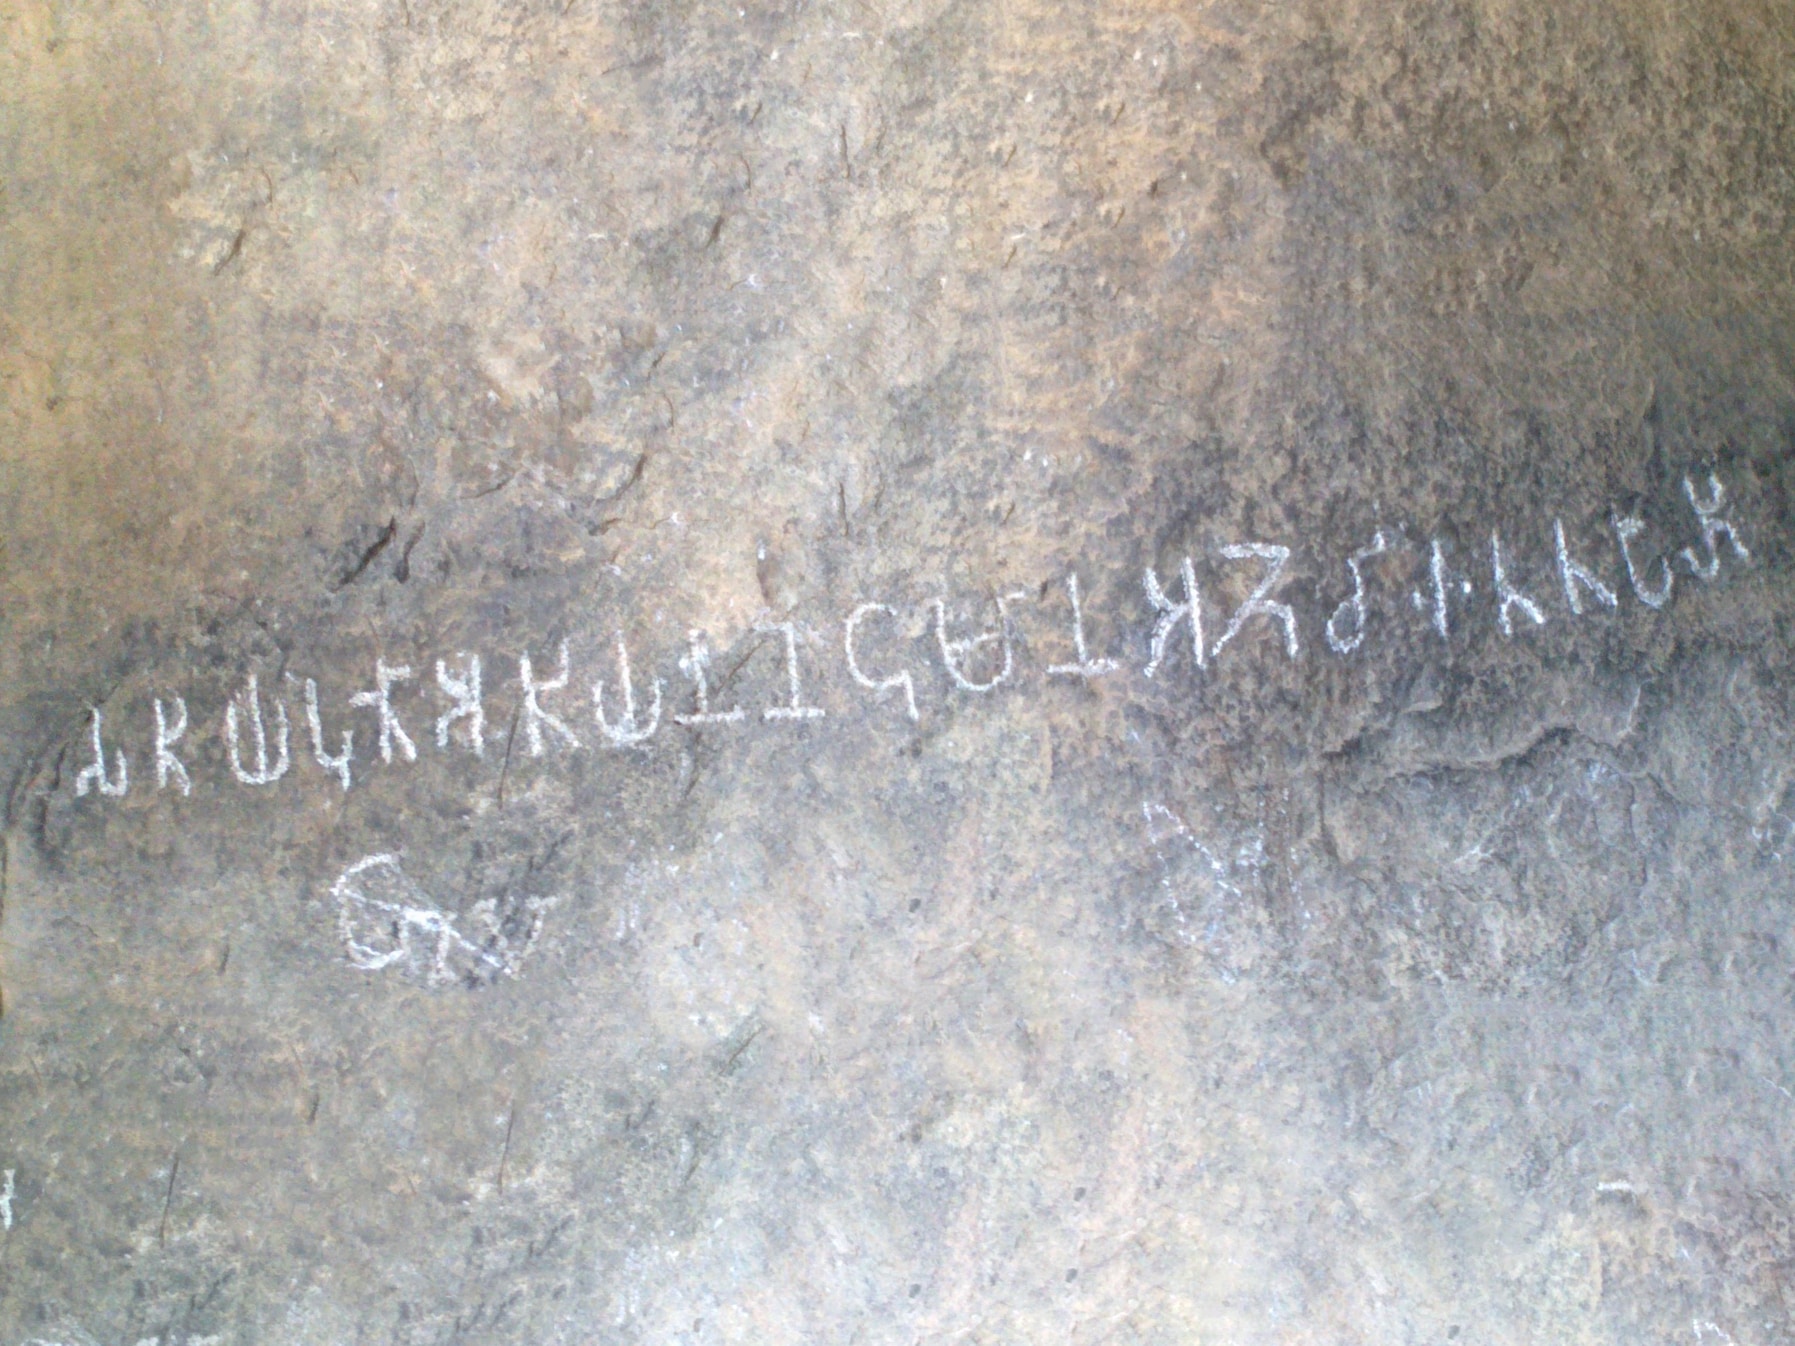 Jambai Tamil Brahmi inscription